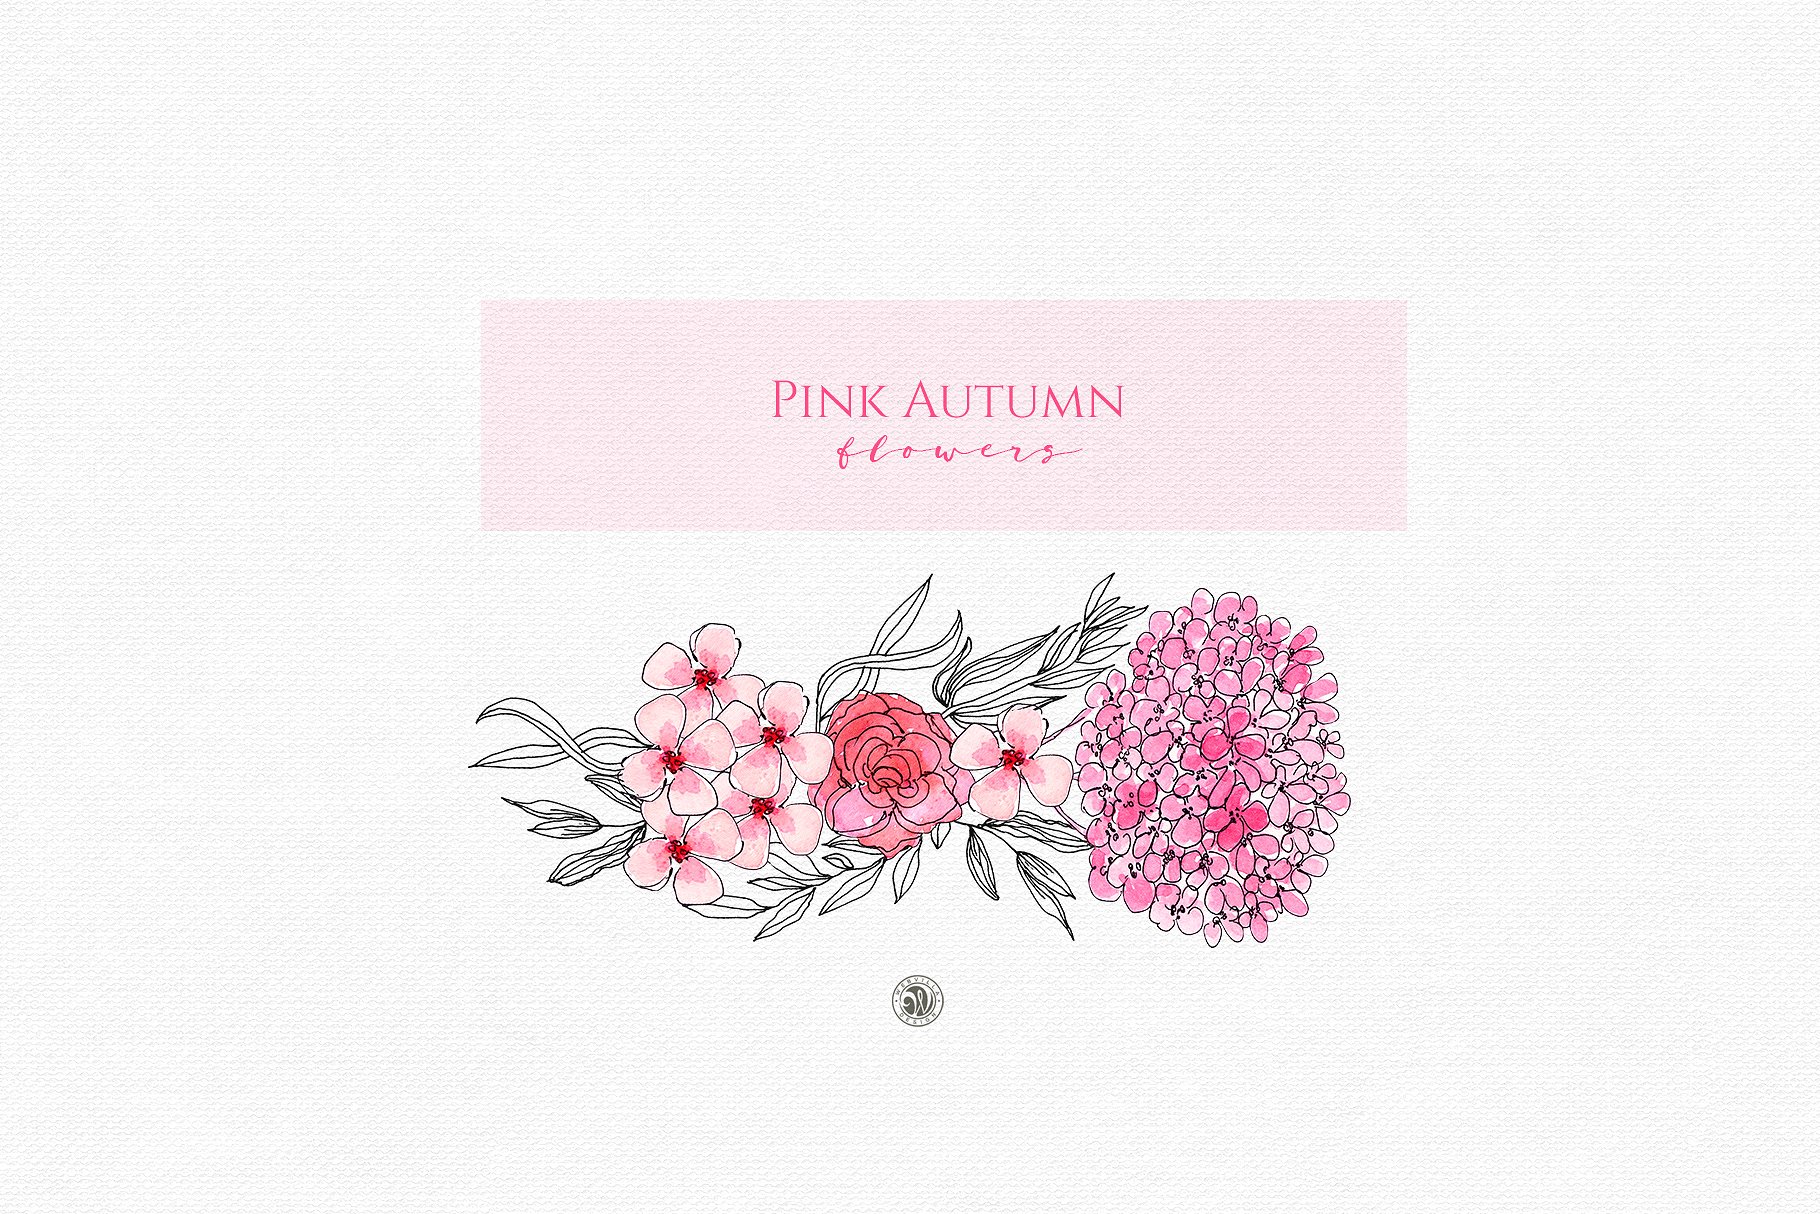 粉红水墨秋季水彩花卉插画 Pink Autumn Flowers插图(2)